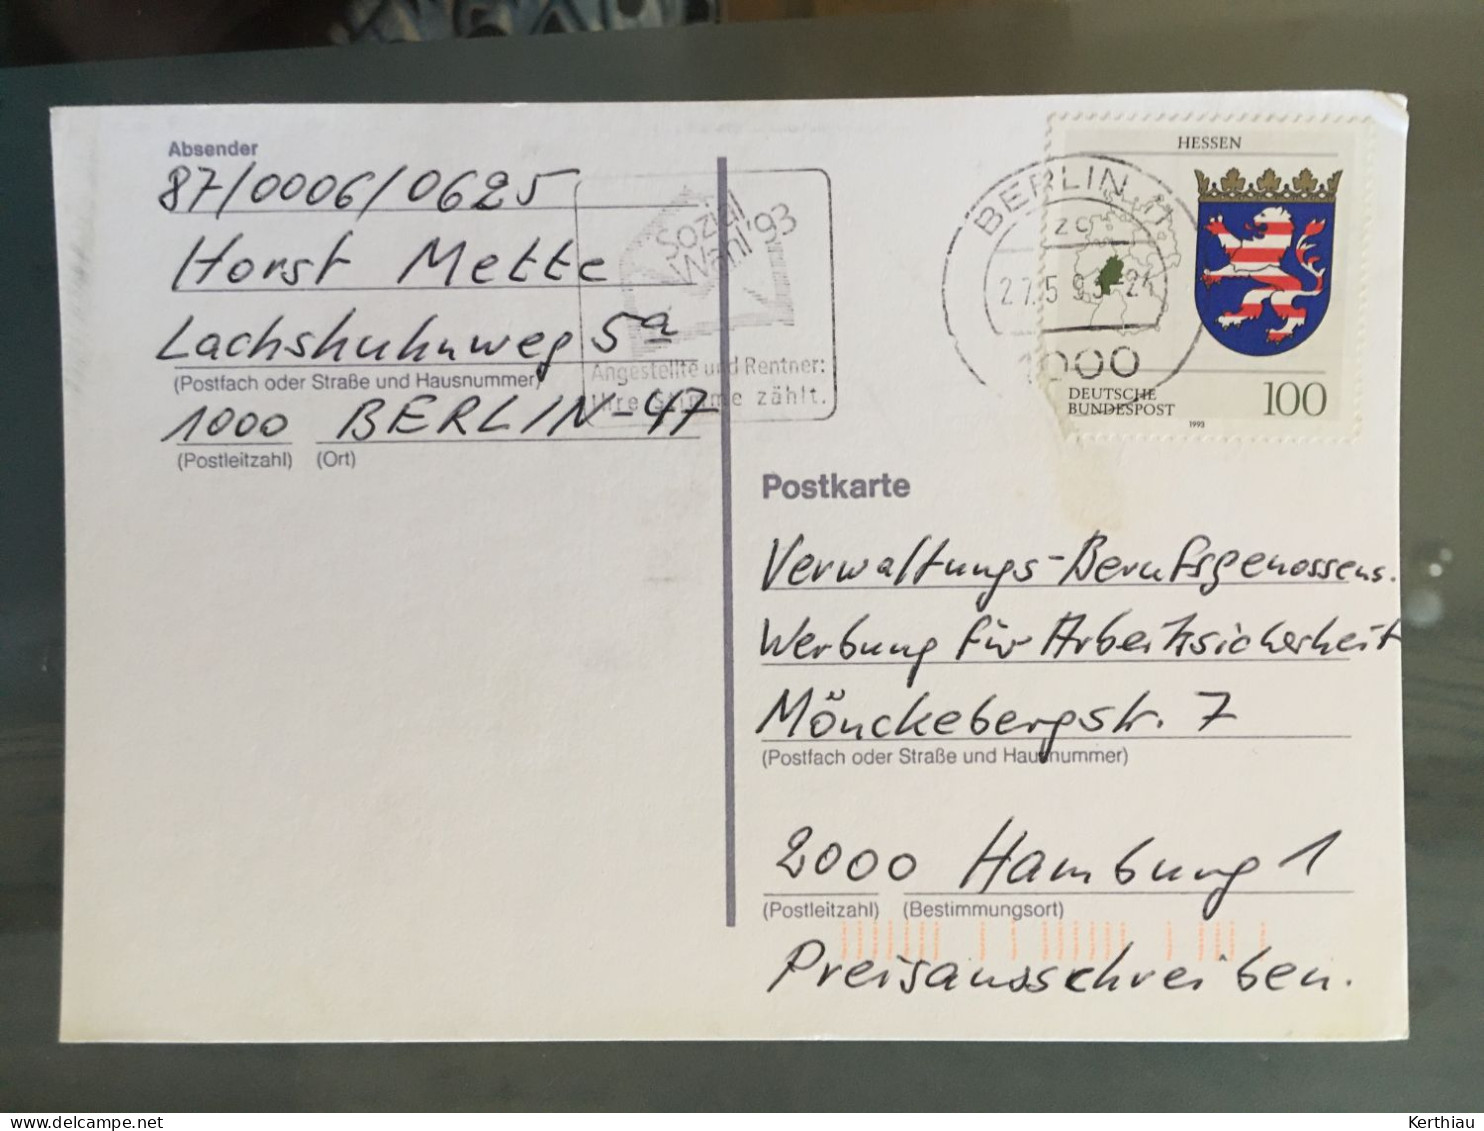 Allemagne -5 entiers postaux  et 5 cartes postales dos blanc.  Années 70-90 (réponses à jeux concours)